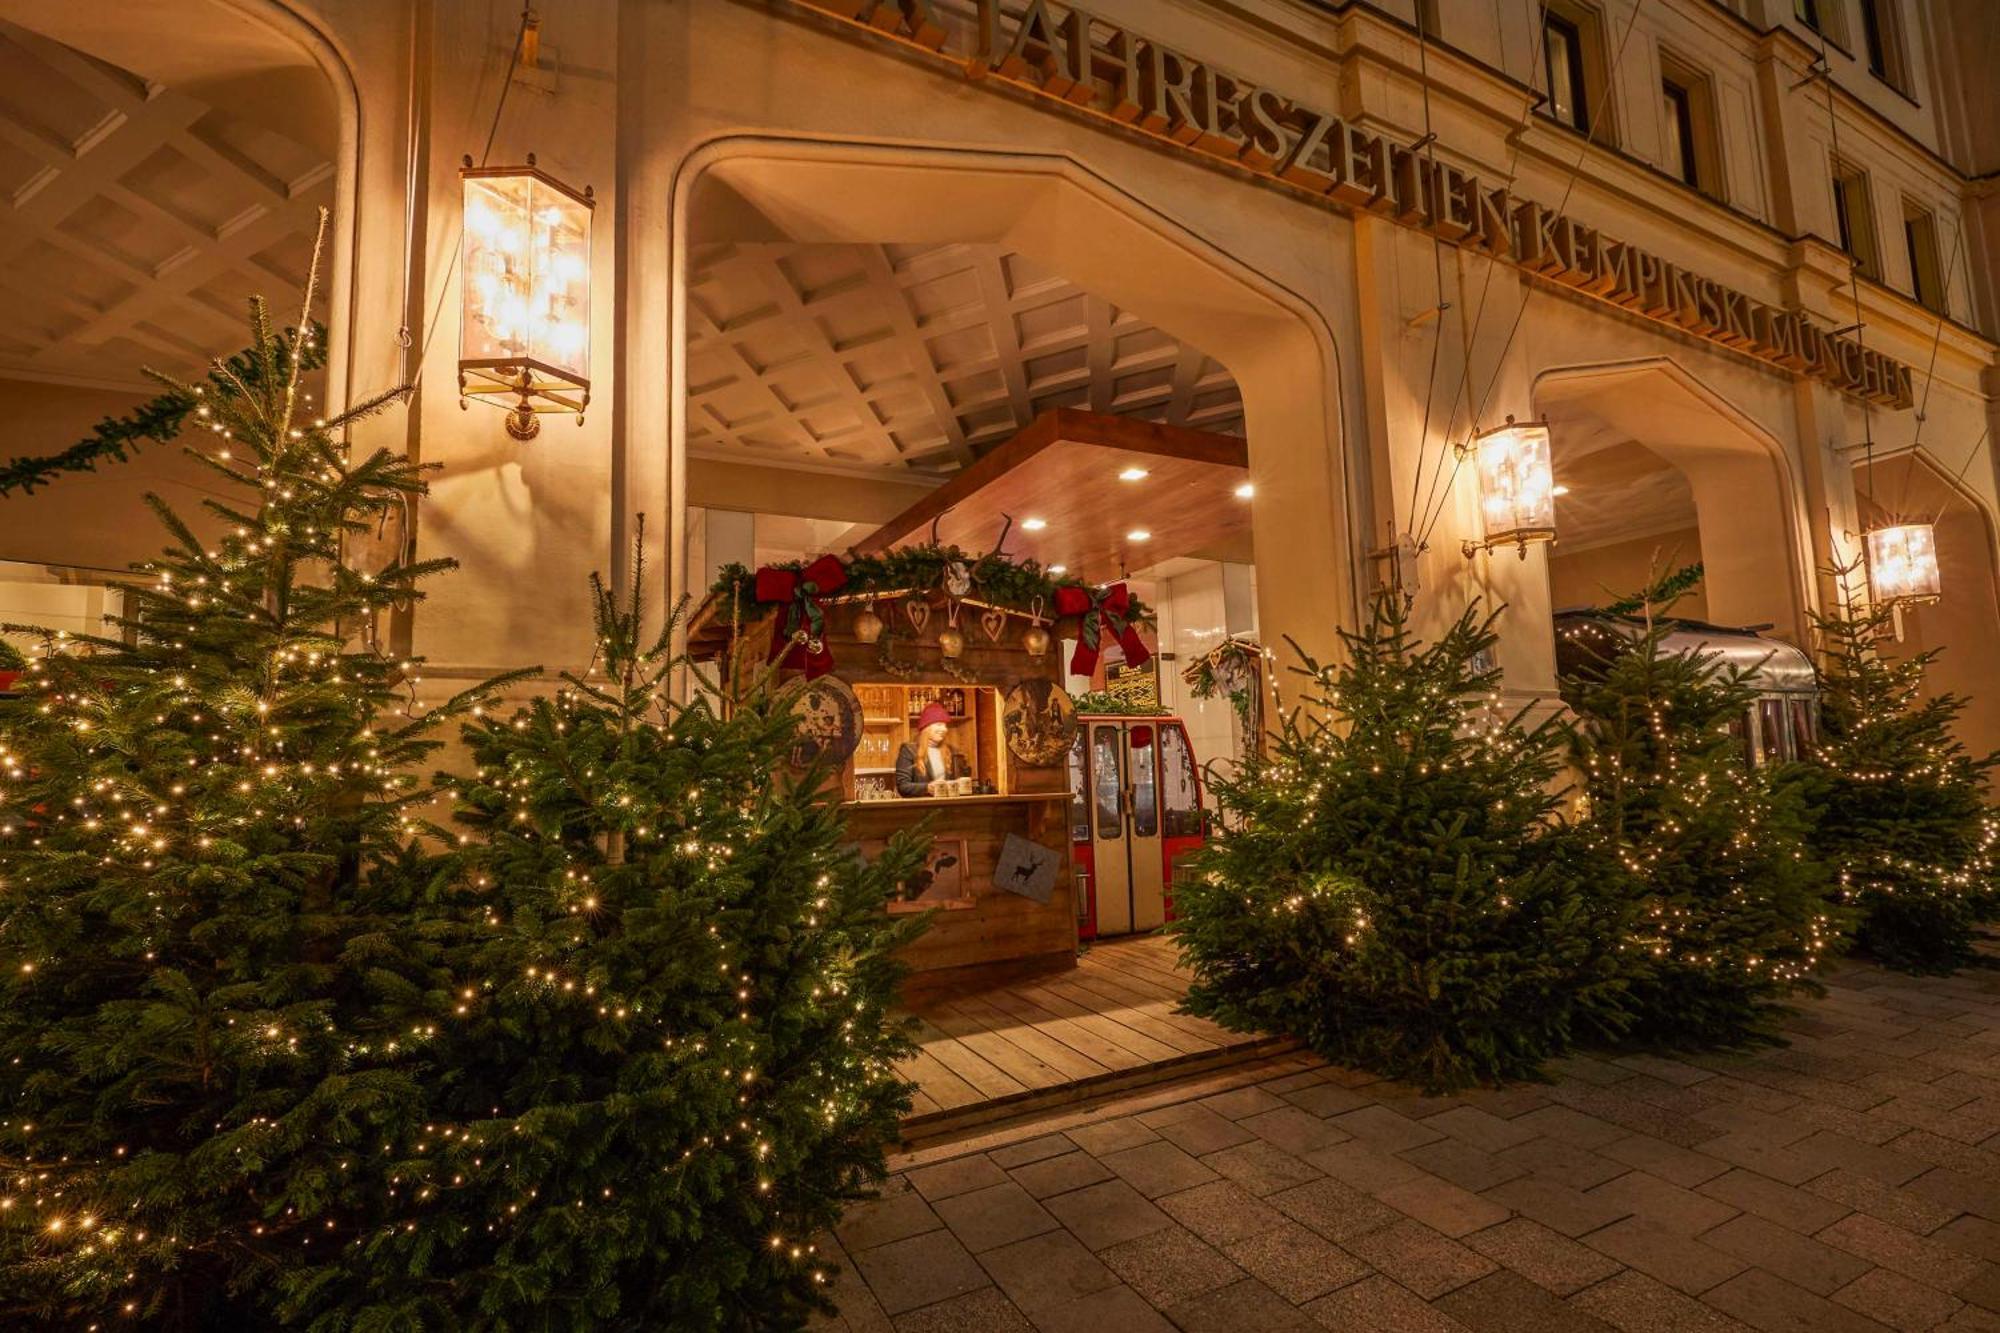 Vier Jahreszeiten Kempinski Munchen Exterior photo